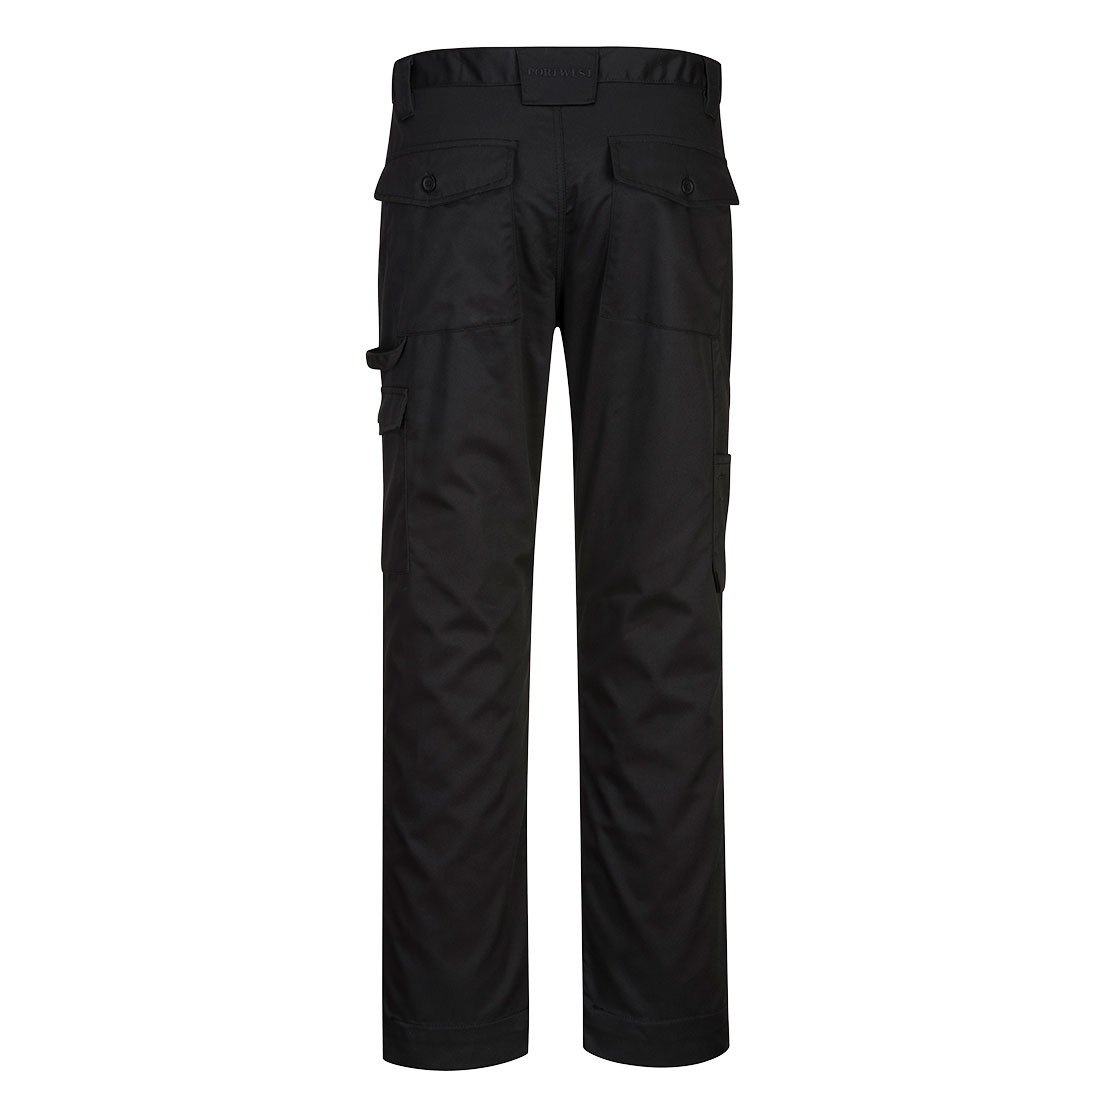 Pantaloni Super Work - Imbracaminte de protectie